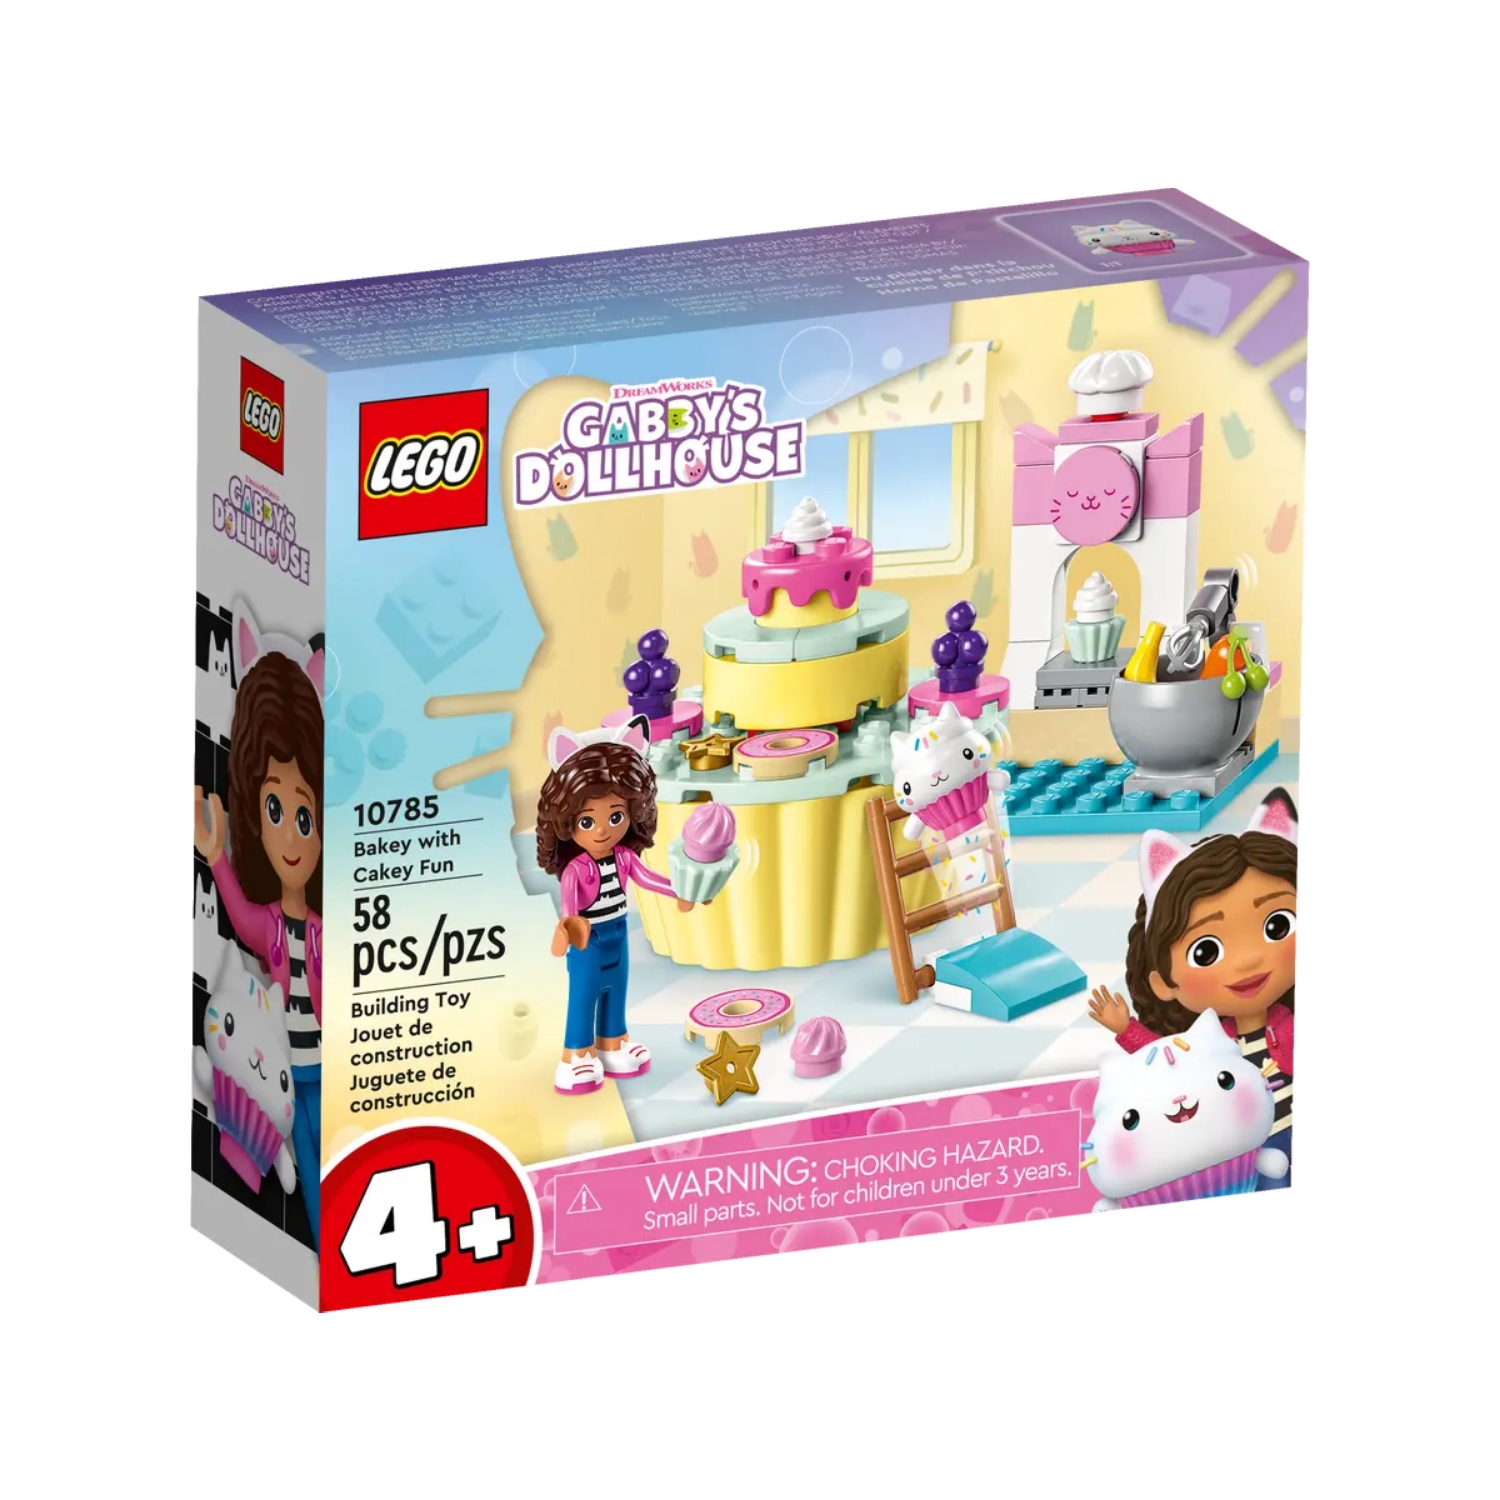 LEGO 10785 GABBY DOLLHOUSE CAKEY CREATIE - 411 0785 - 532457